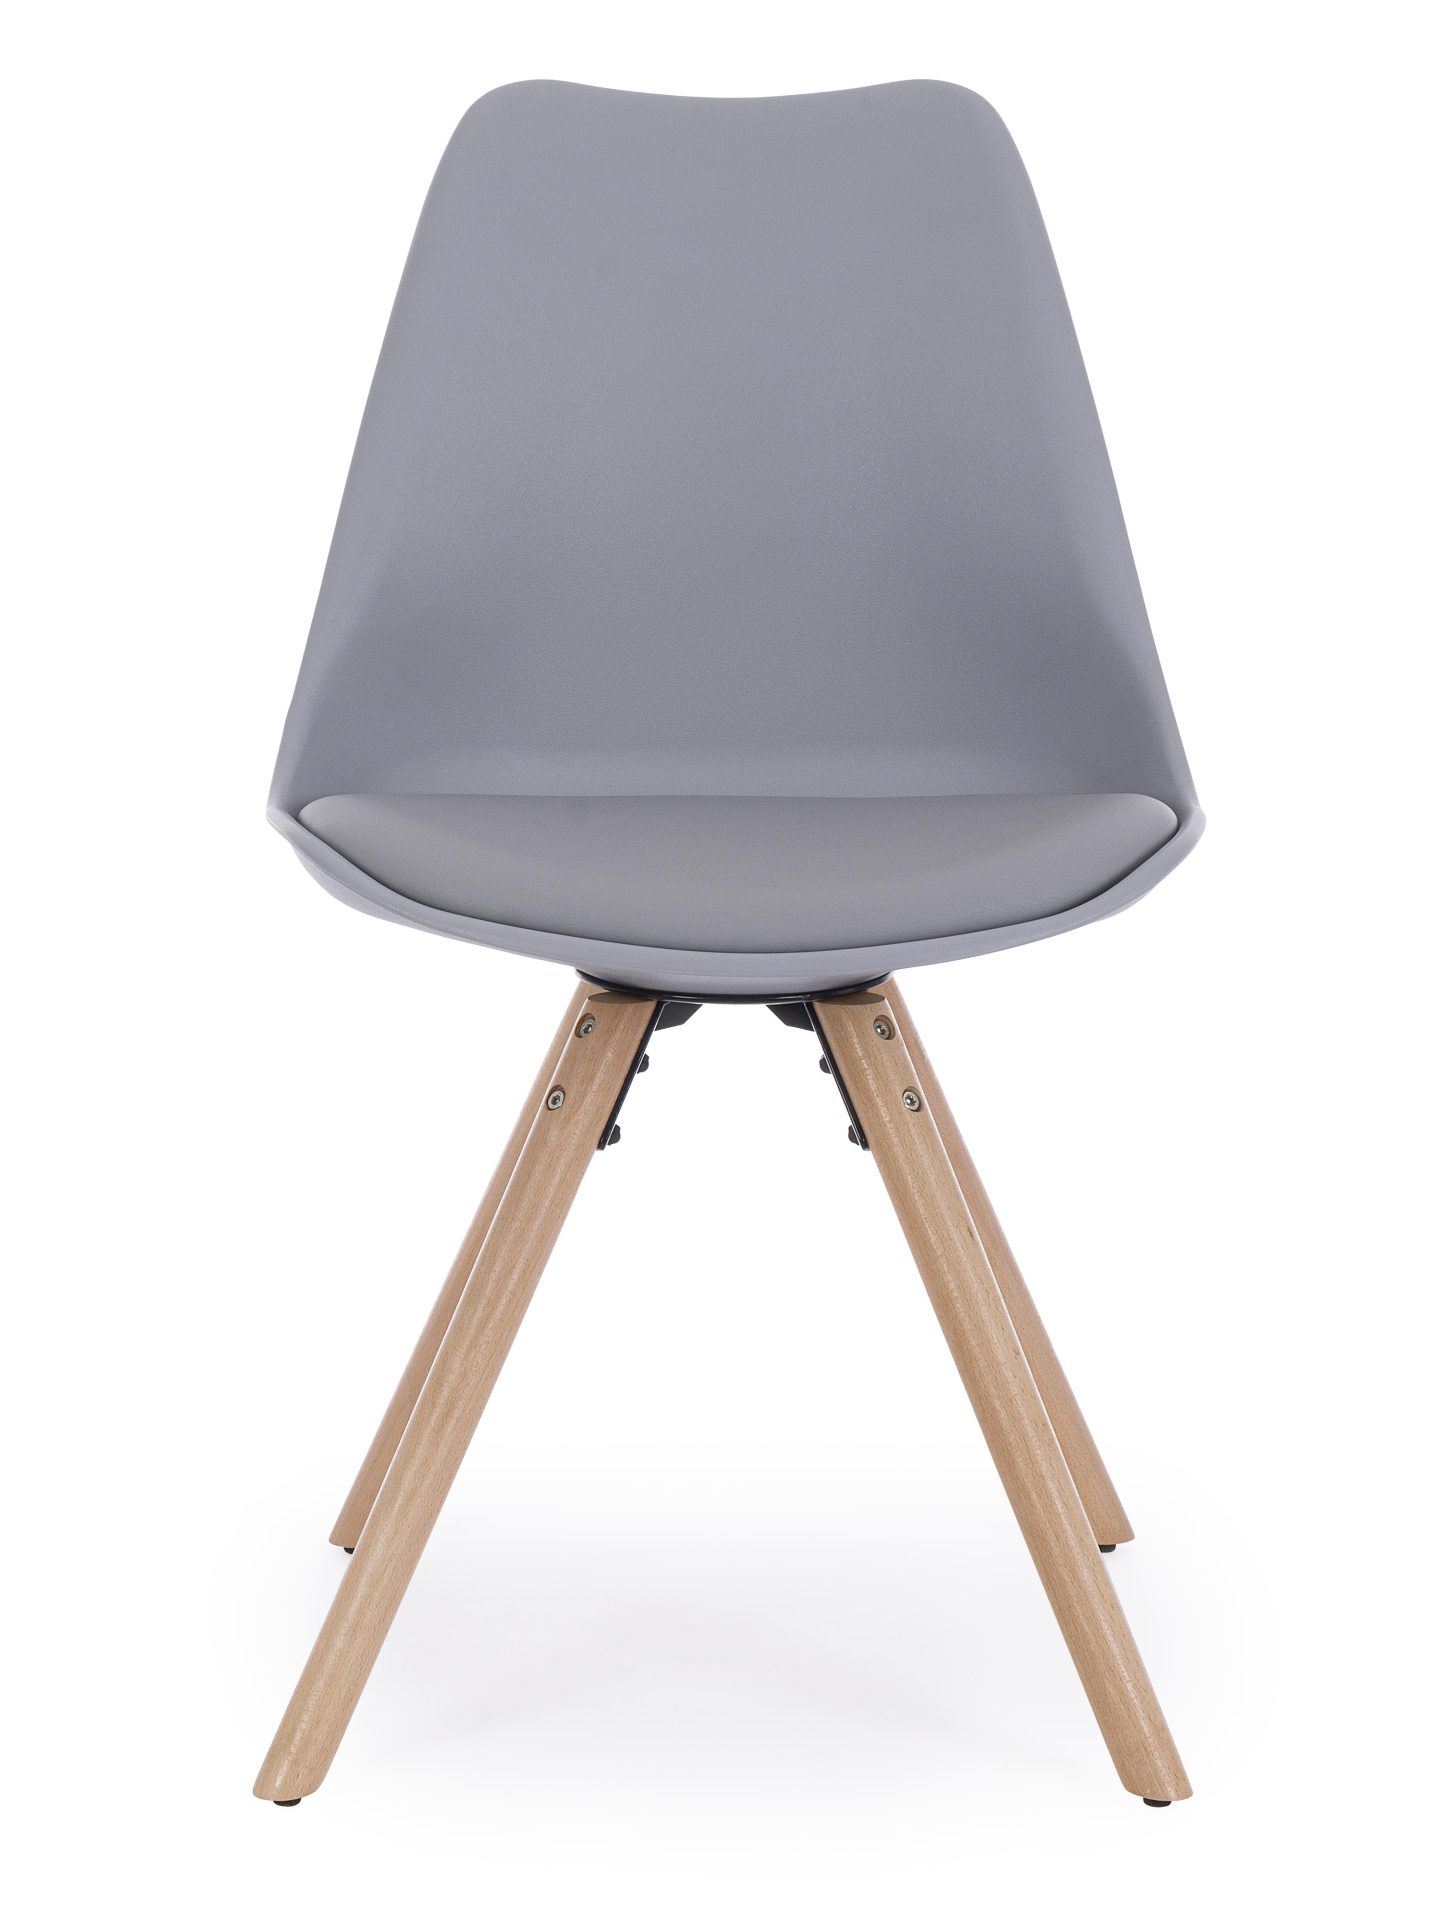 Der Stuhl New Trend überzeugt mit seinem modernem Design. Gefertigt wurde der Stuhl aus Kunststoff, welcher einen grauen Farbton besitzt. Das Gestell ist aus Buchenholz. Die Sitzhöhe des Stuhls ist 49 cm